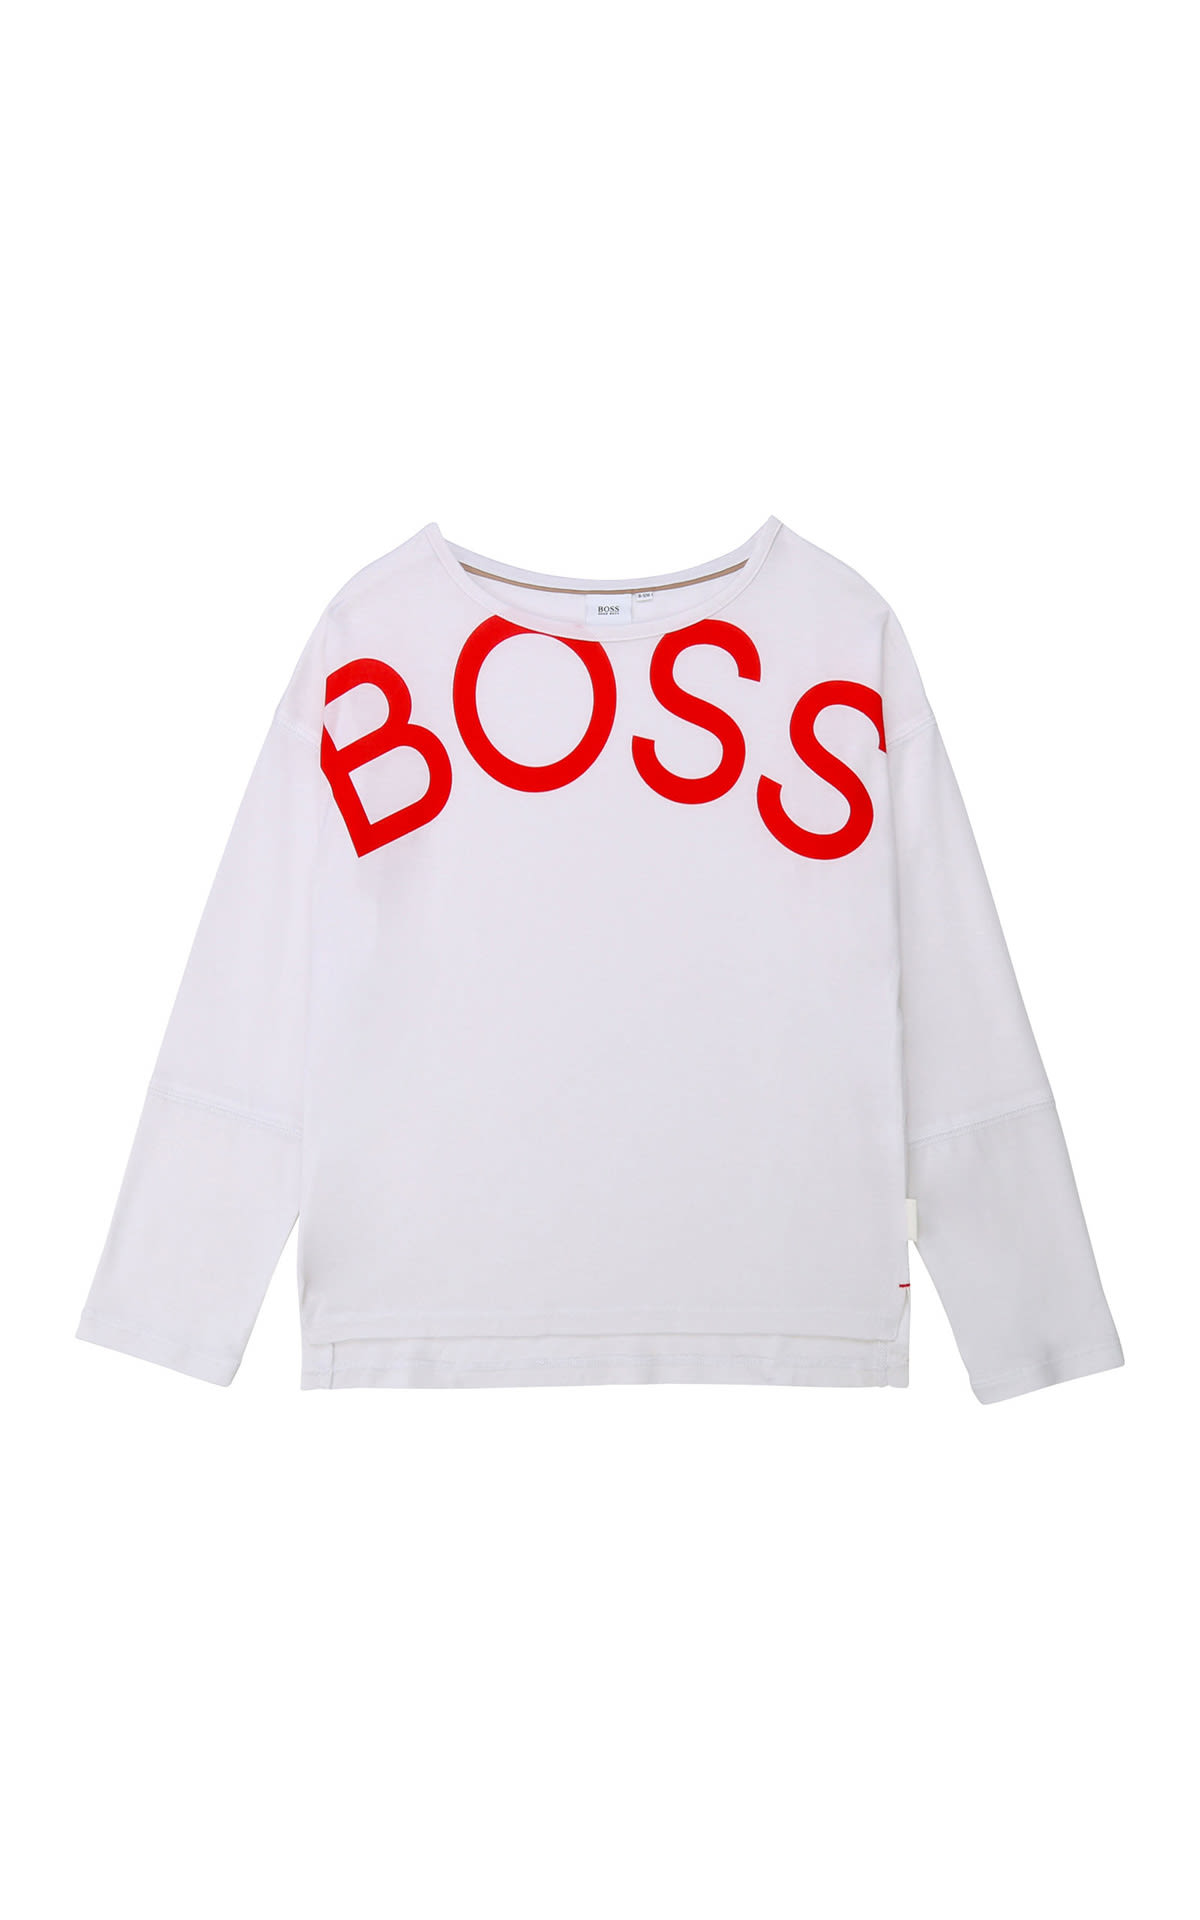 Camiseta manga larga logo Boss Kidswear